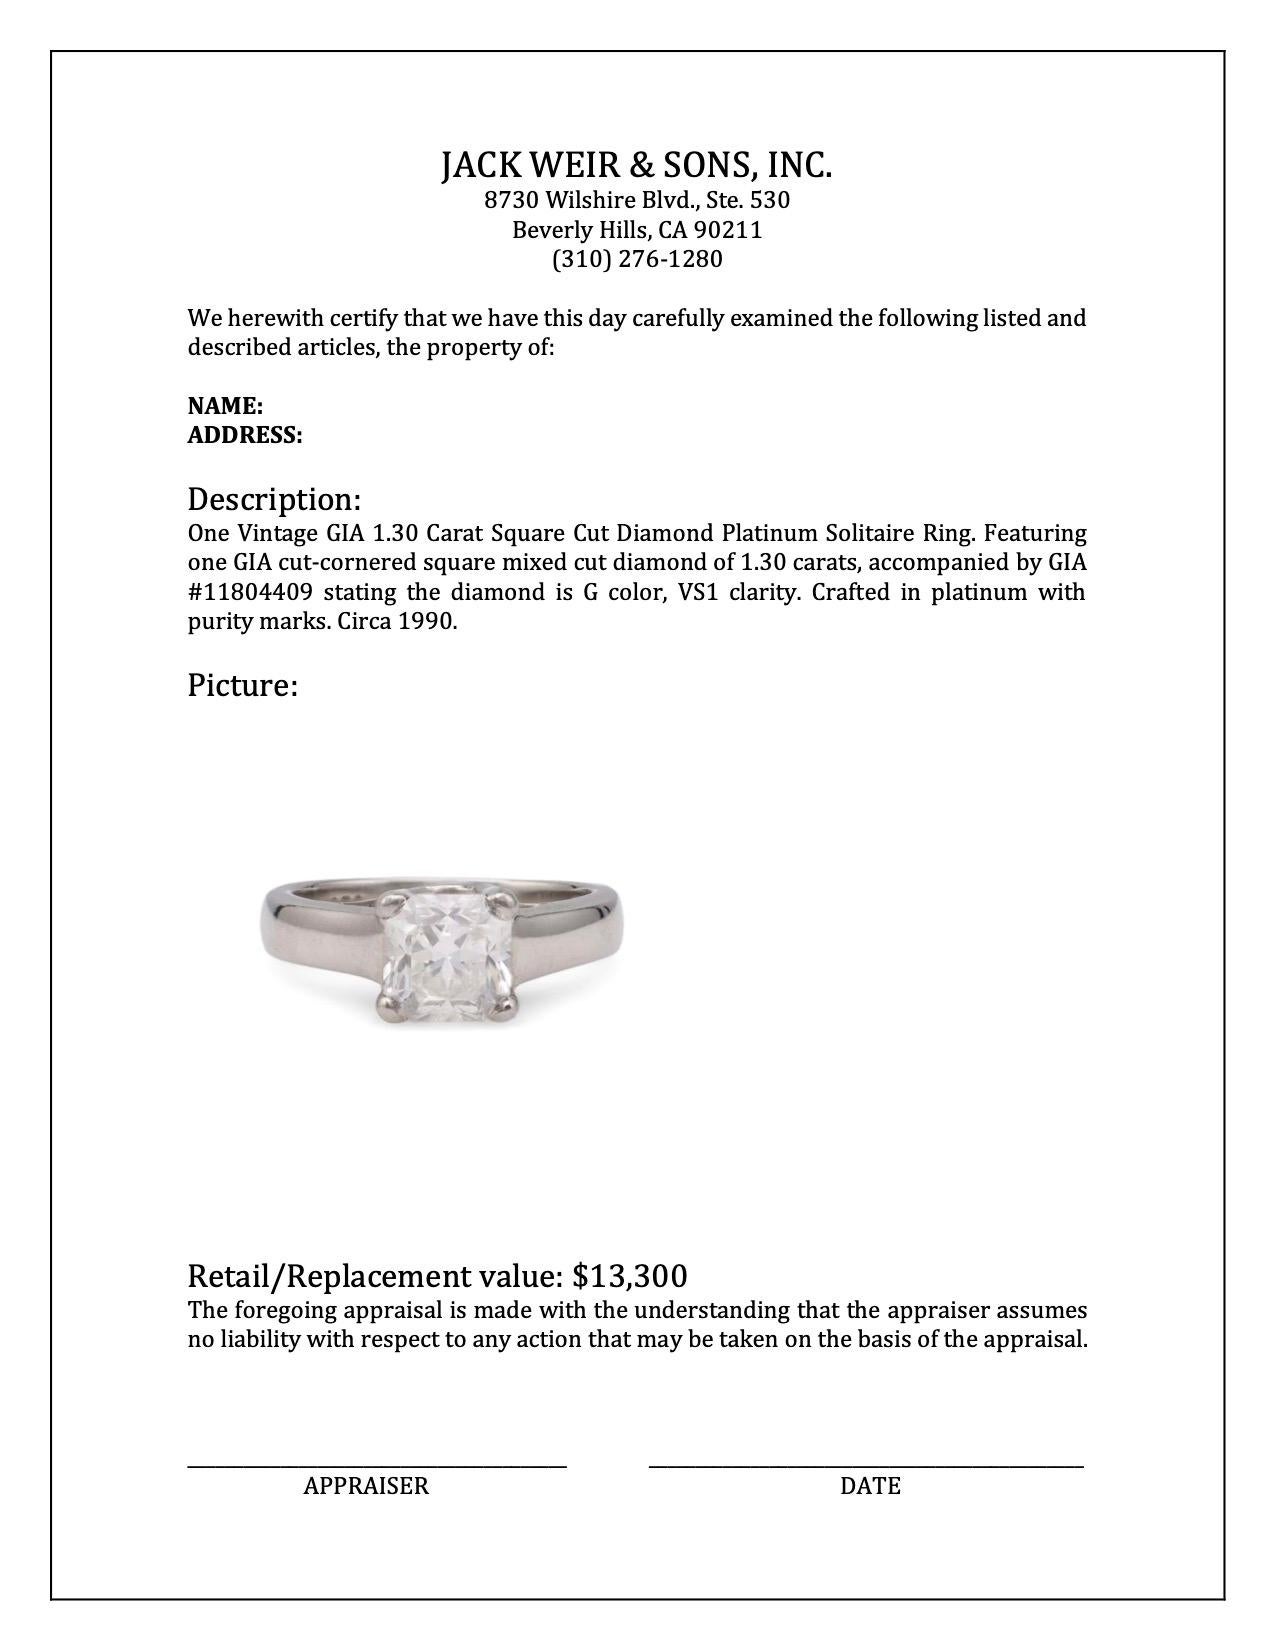 Vintage GIA 1.30 Carat Square Cut Diamond Platinum Solitaire Ring 2